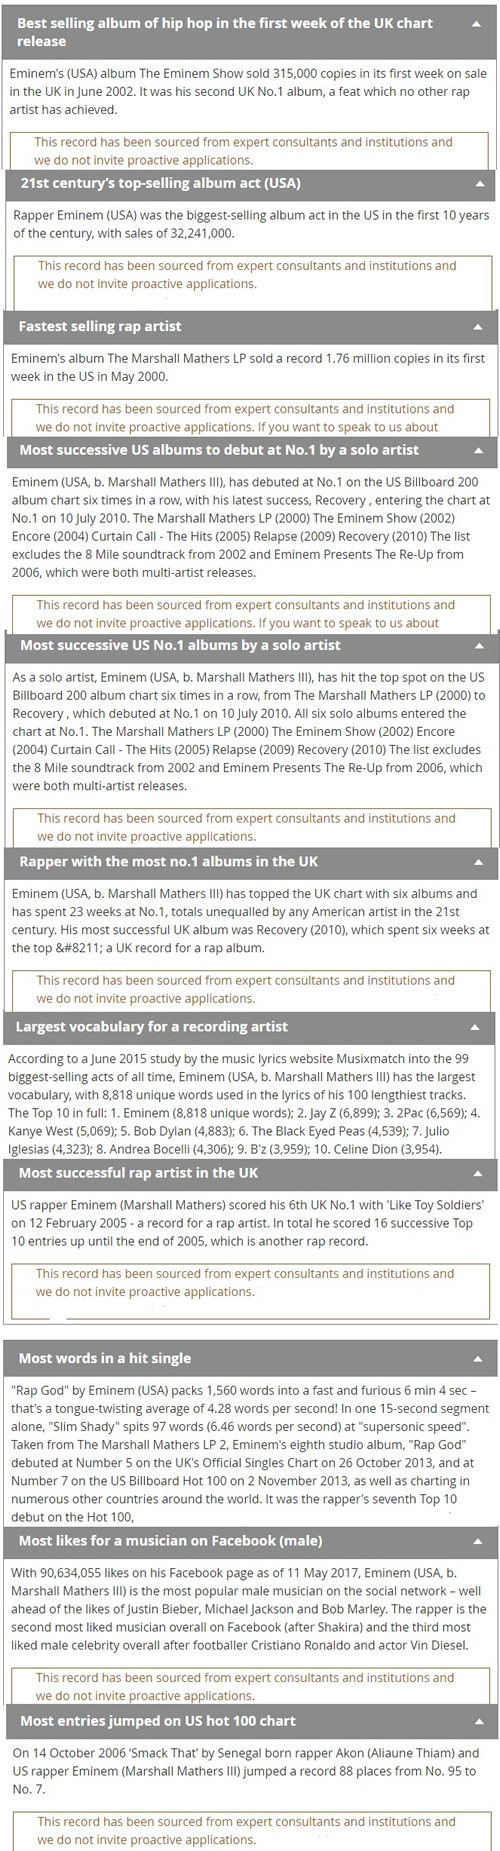 厉害了! 实际上Rap God Eminem拥有11个吉尼斯纪录 (详细列表)